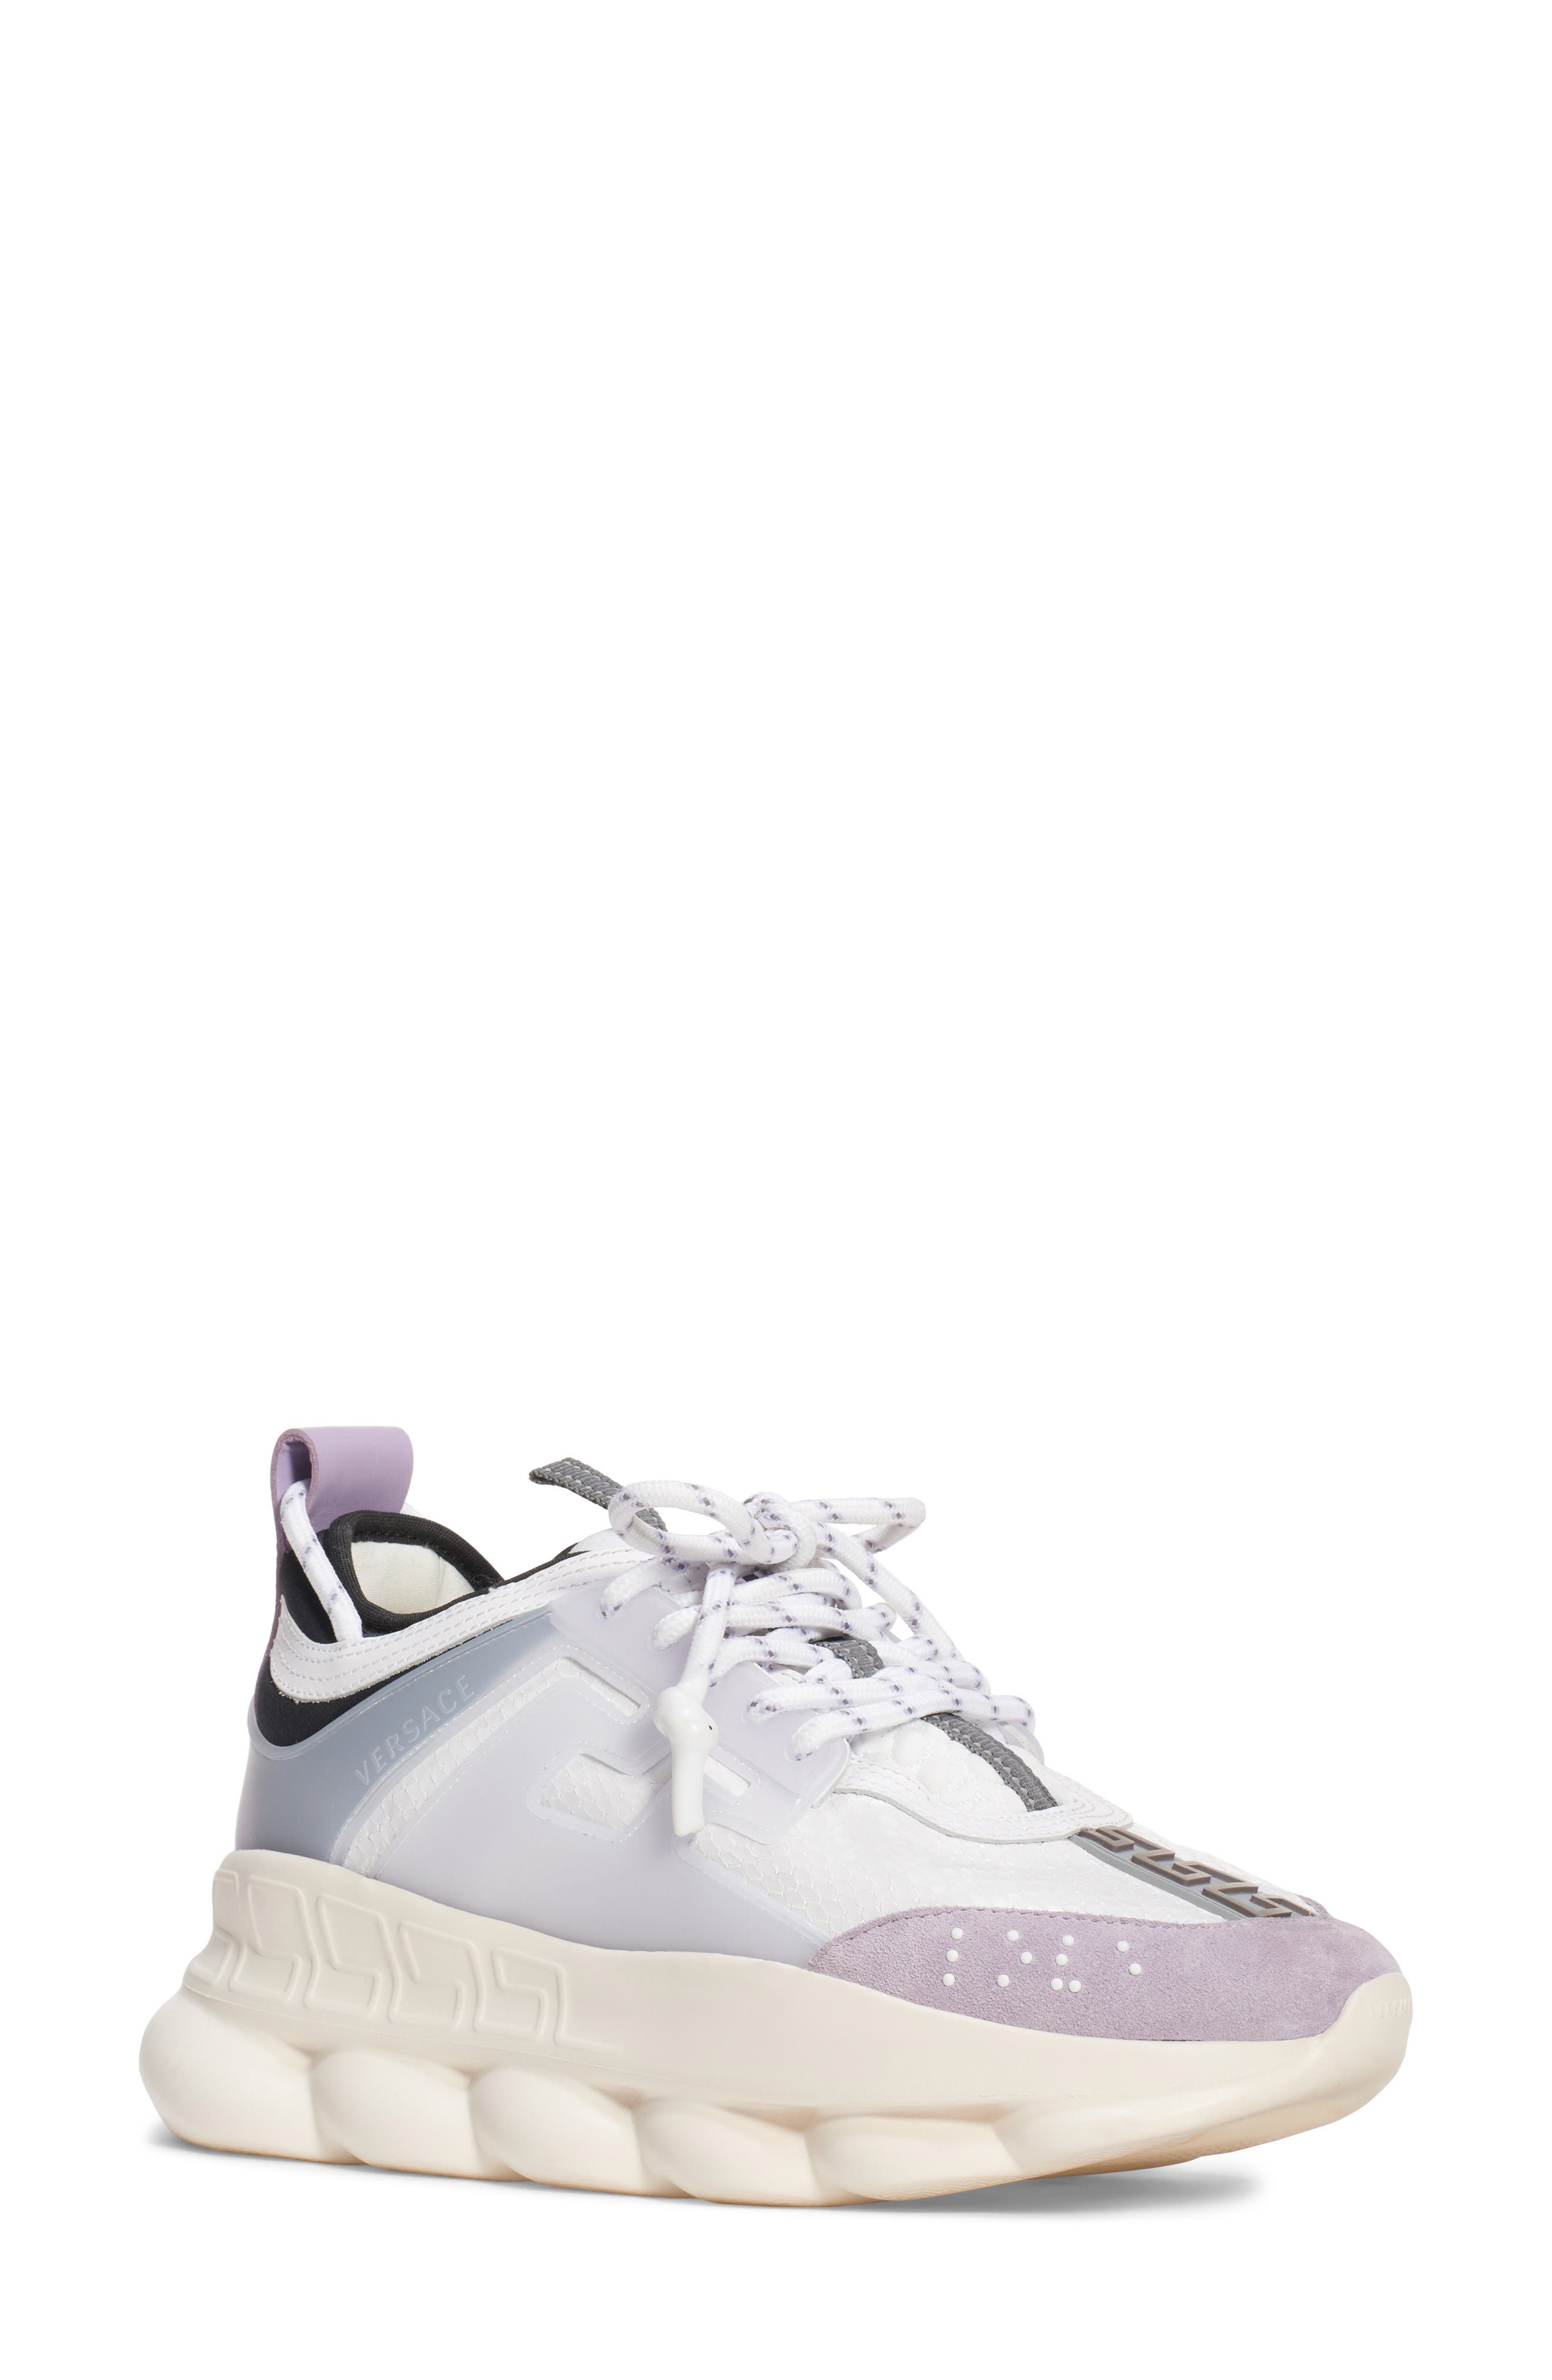 purple versace shoes